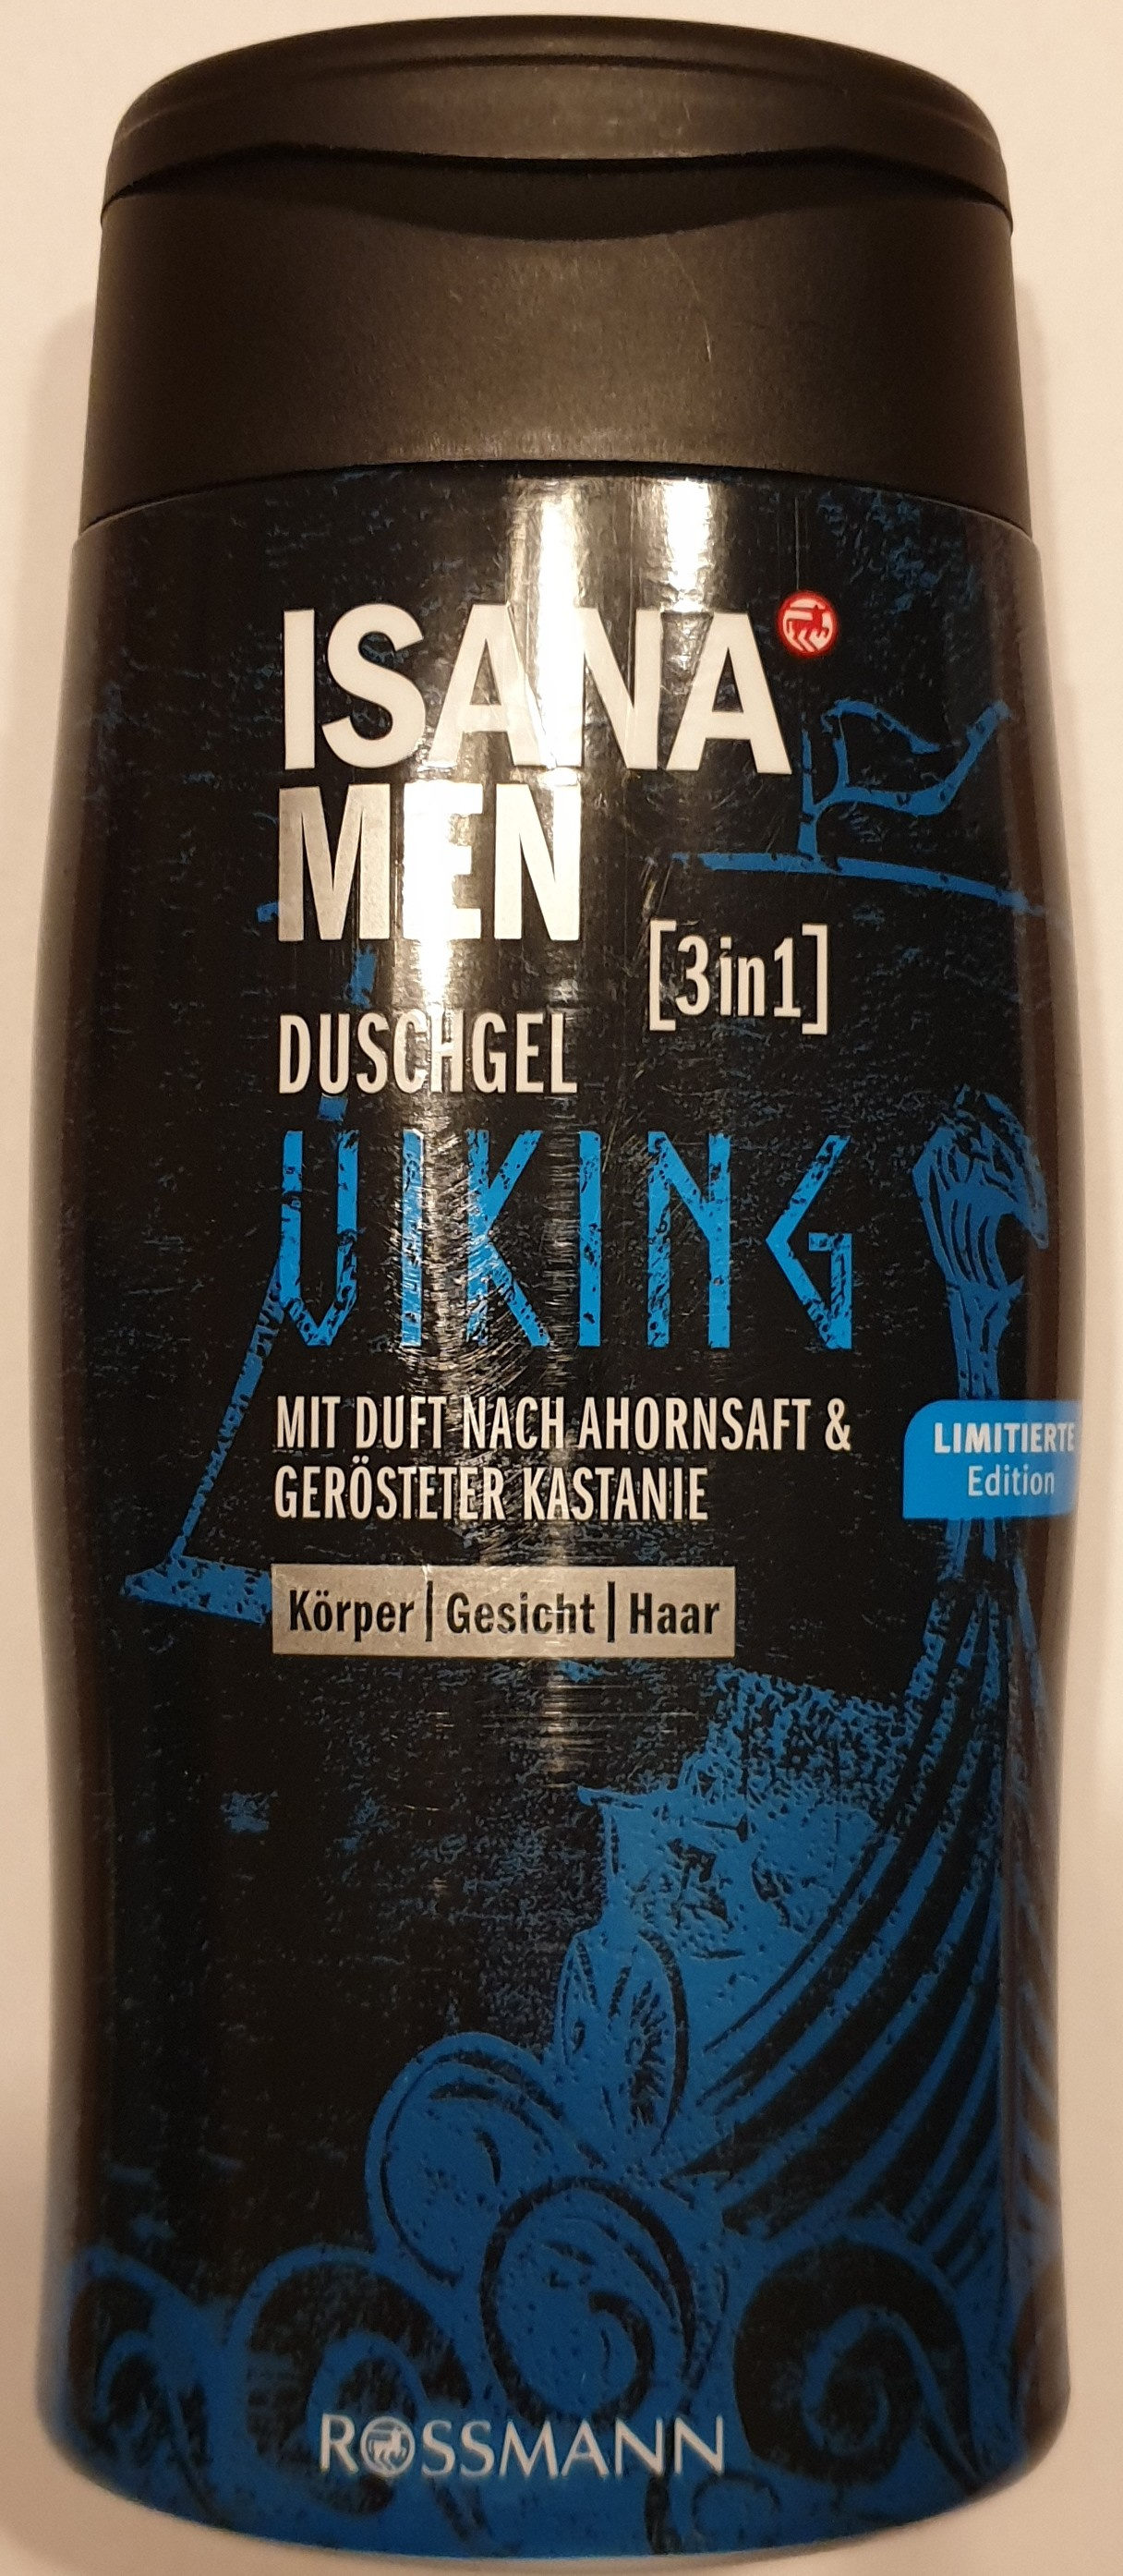 Duschgel viking [3in1] - Product - de